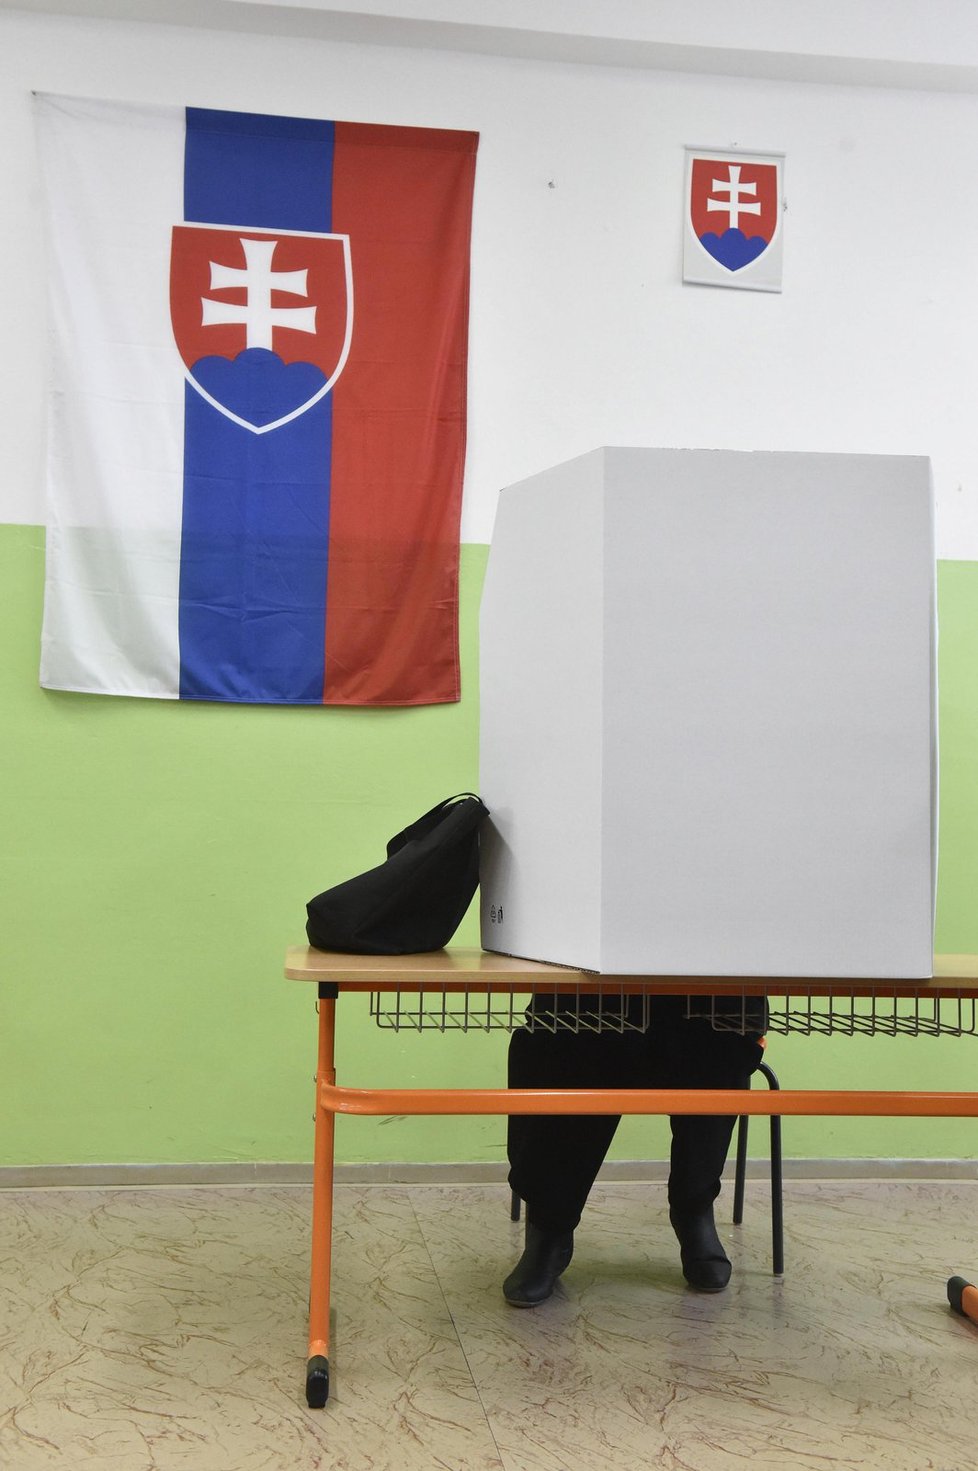 Parlamentní volby se konaly 5. března na Slovensku. Na snímku volební místnost v Trnavě